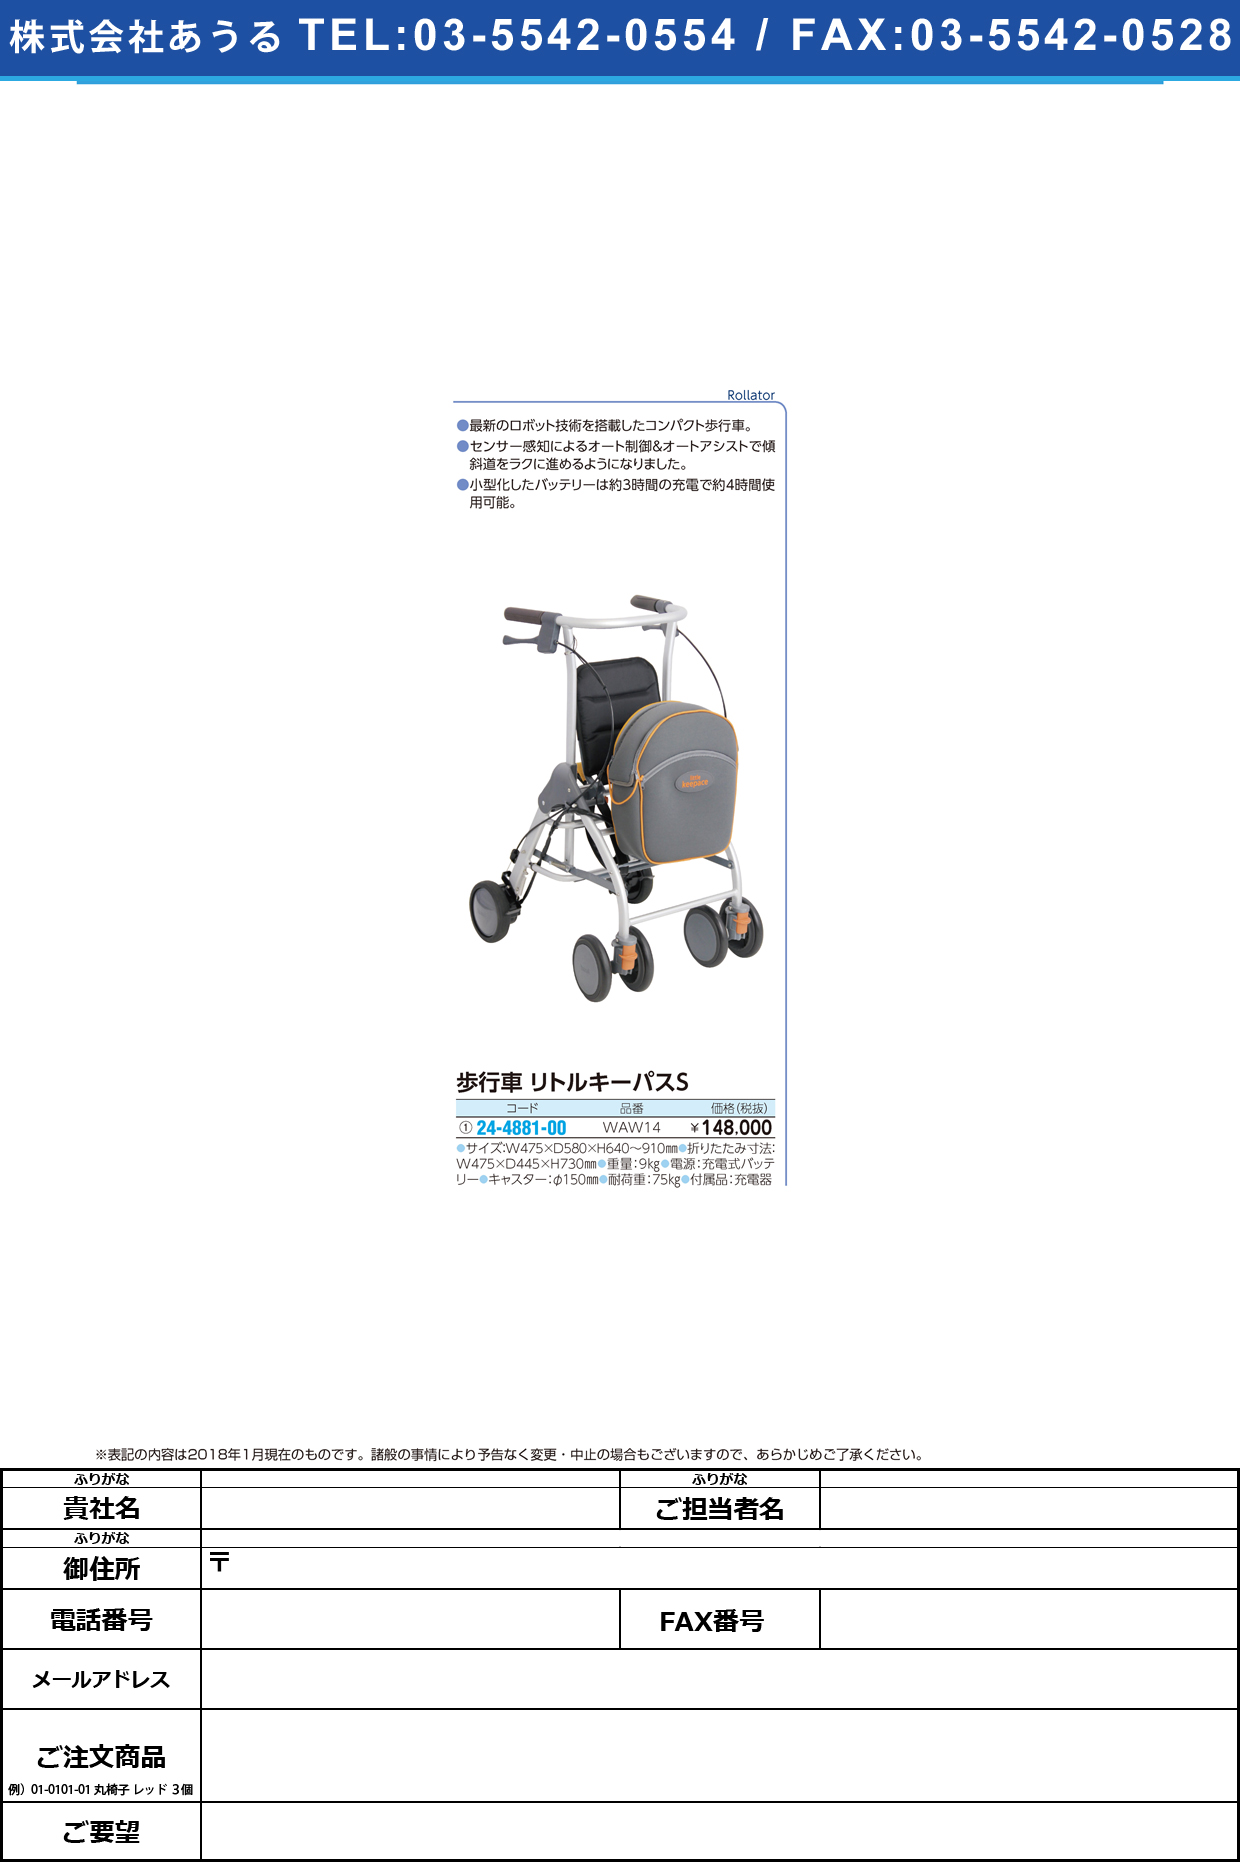 (24-4881-00)歩行車リトルキーパスＳ WAW14 ﾎｺｳｼｬﾘﾄﾙｷｰﾊﾟｽS【1台単位】【2018年カタログ商品】